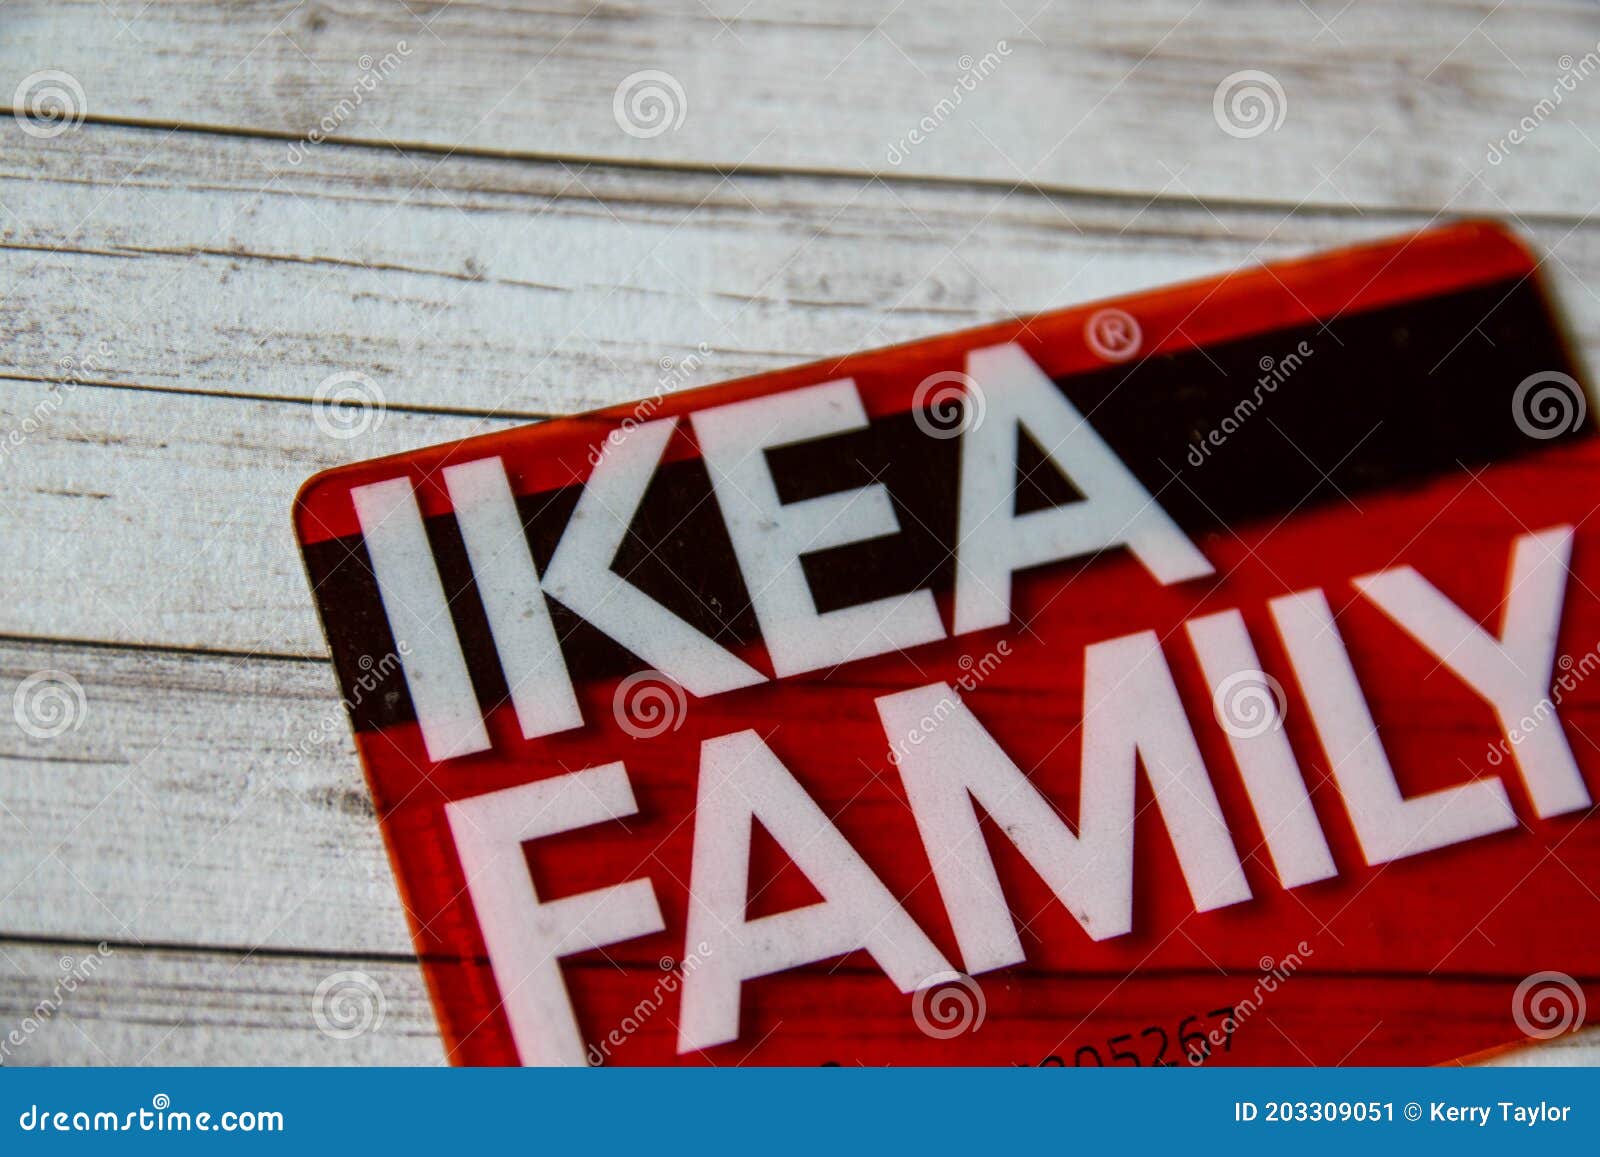 In de genade van Uitgebreid gelijkheid Ikea Family Card on Isolated Background Editorial Photo - Image of cheap,  discounts: 203309051